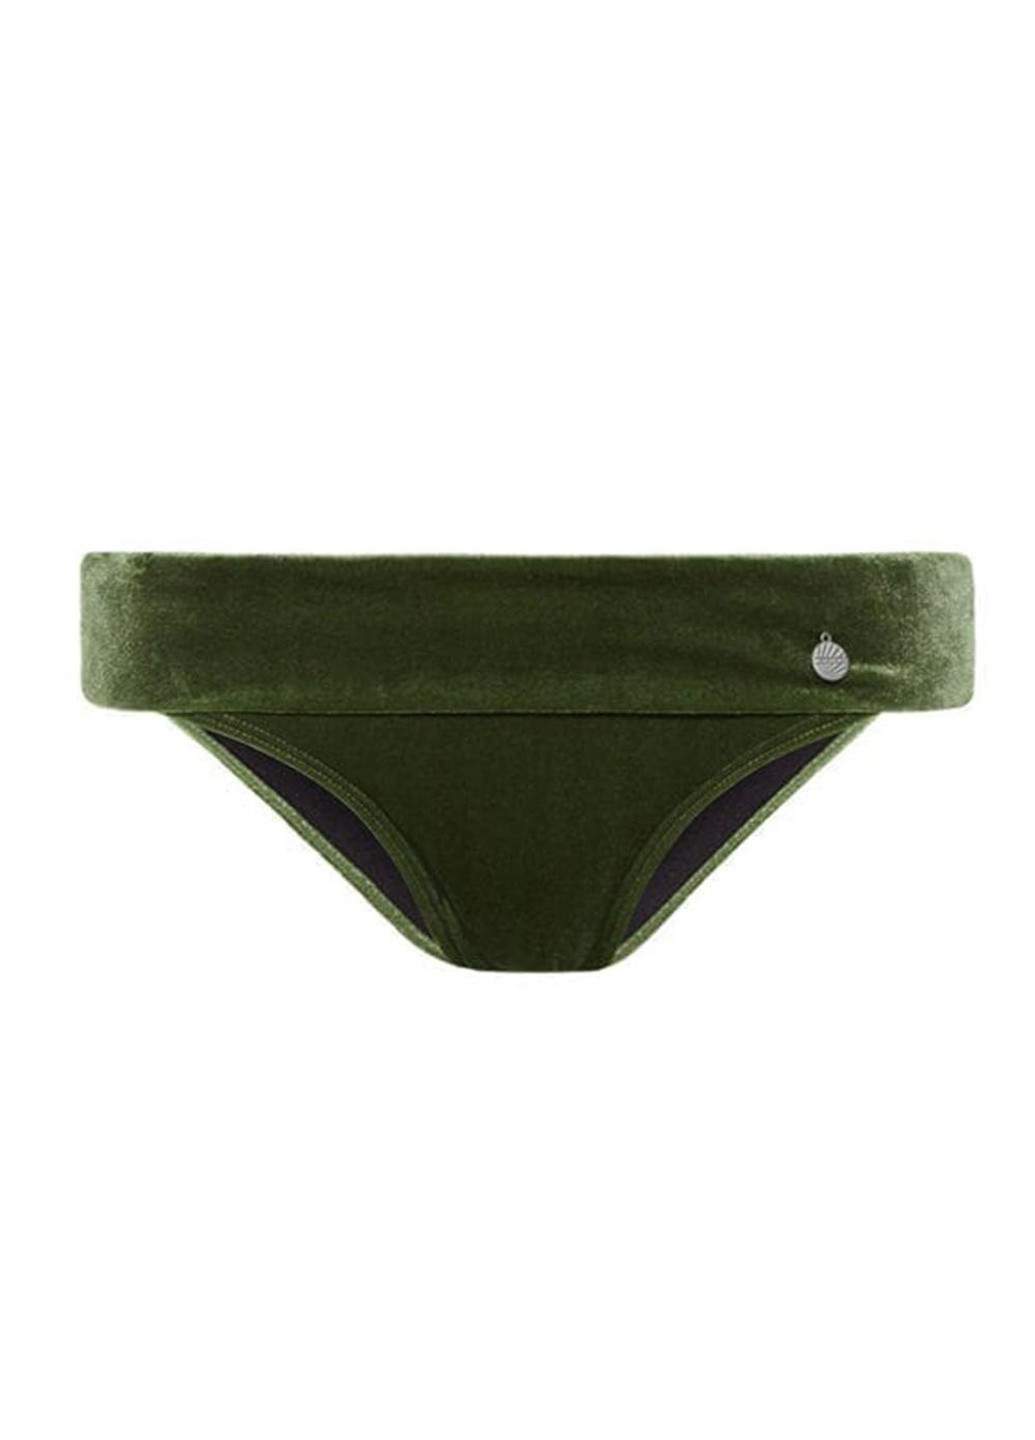 Зеленые труси купальні жіночі 44/xl зелений 970201-781 Beachlife